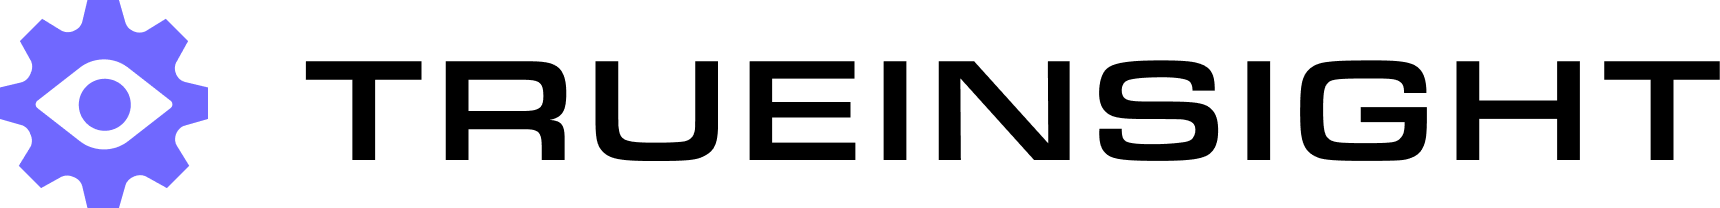 dark-multicolored-logo